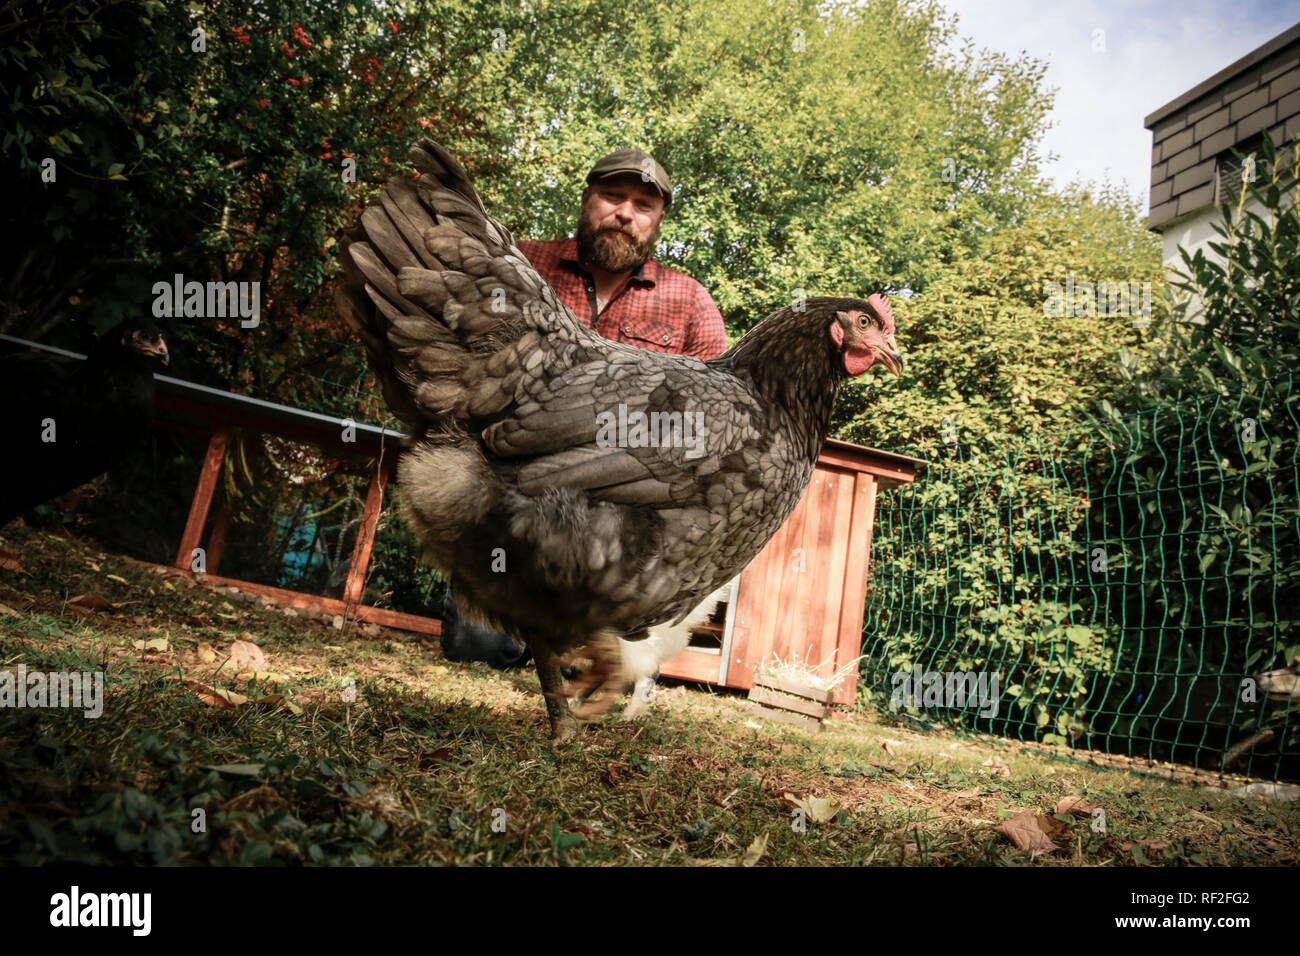 Man in his own garden, free range chicken Stock Photo